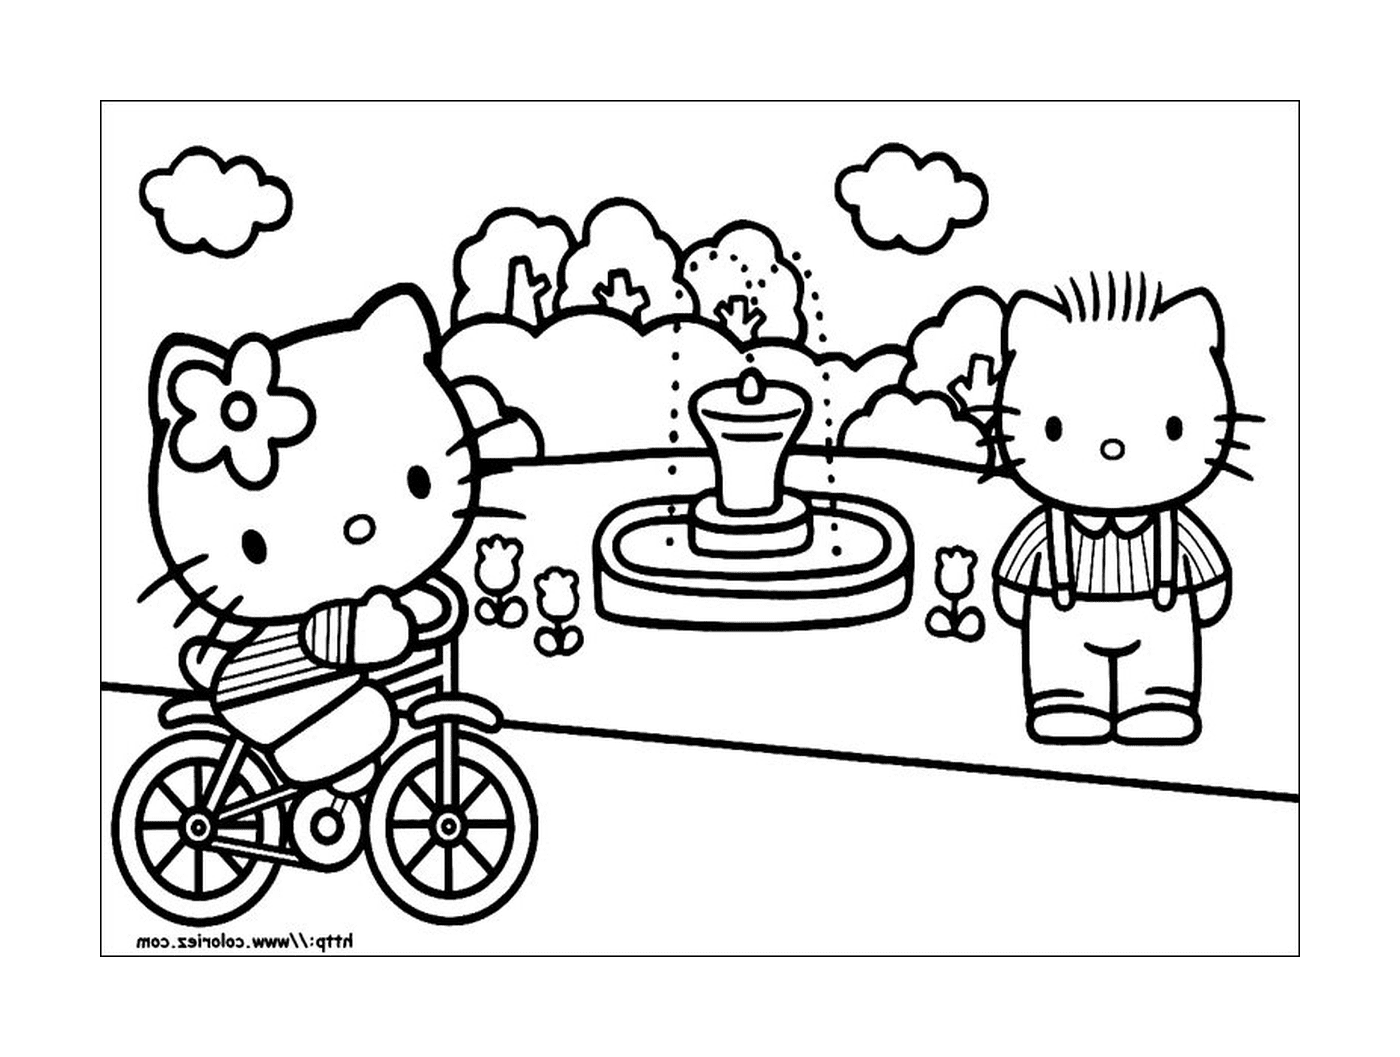  Hello Kitty e um menino andando de bicicleta 